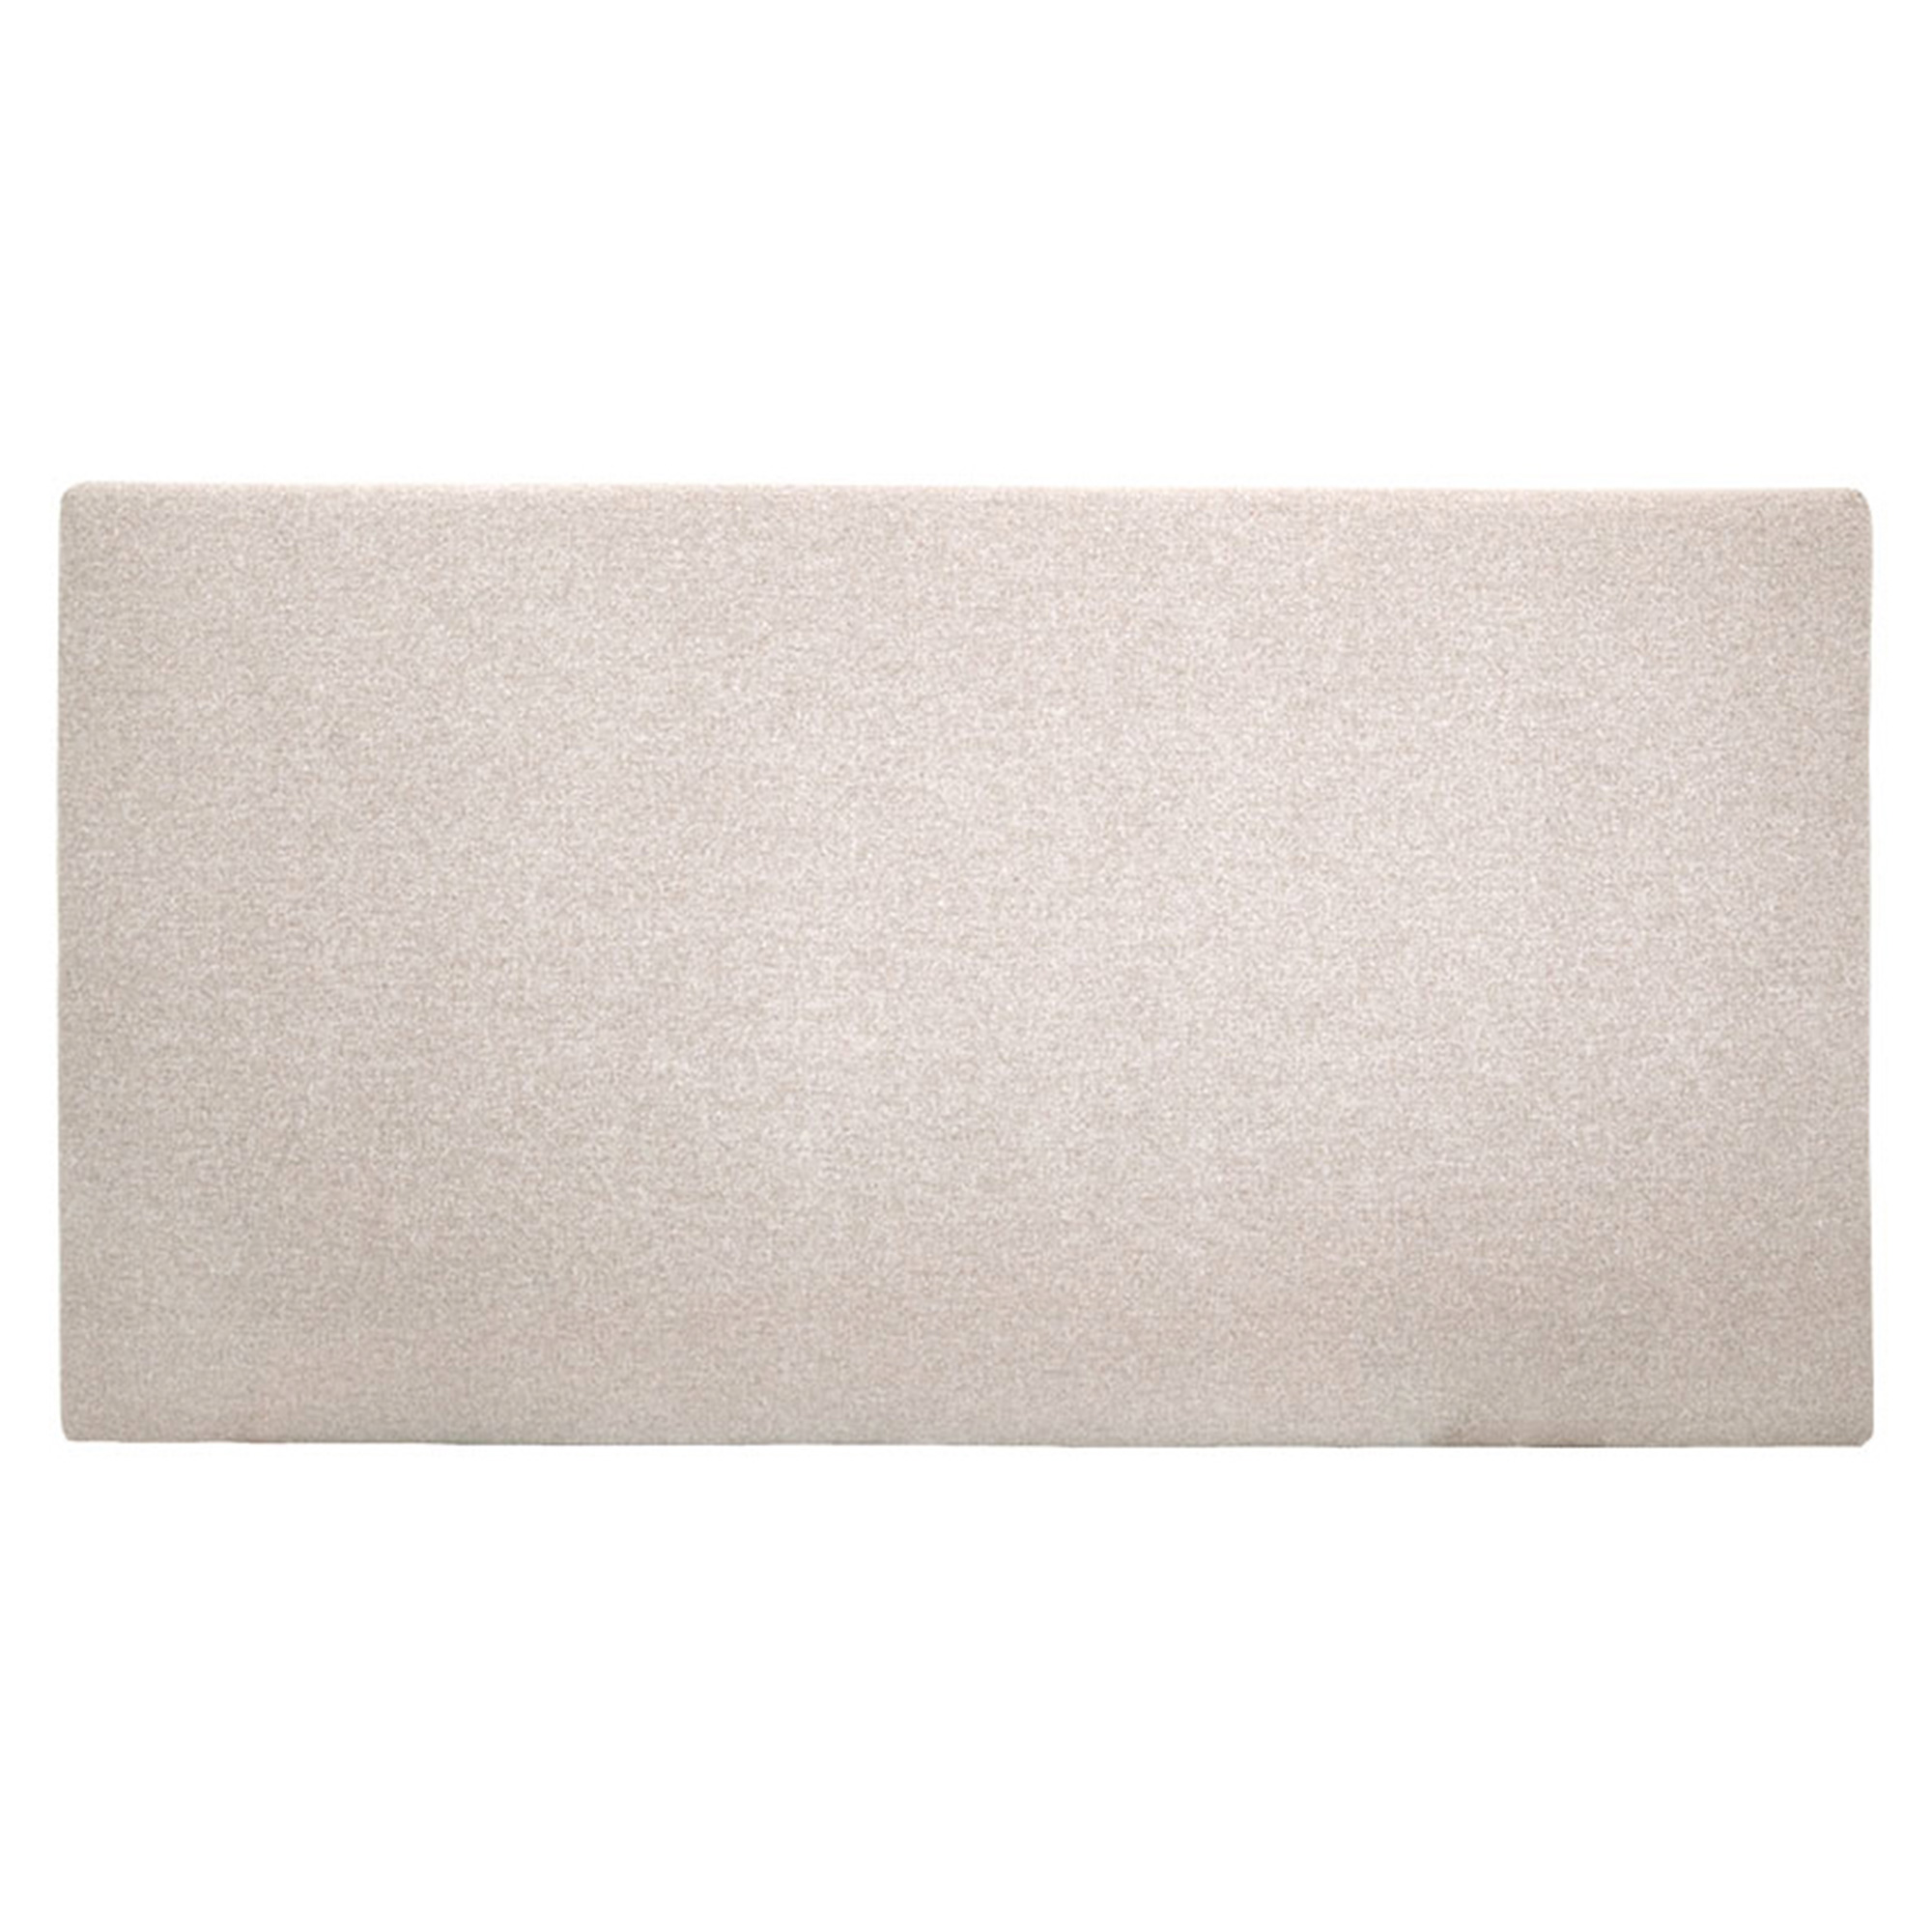 Tête de lit polyester lisse couleur beige 90x80cm